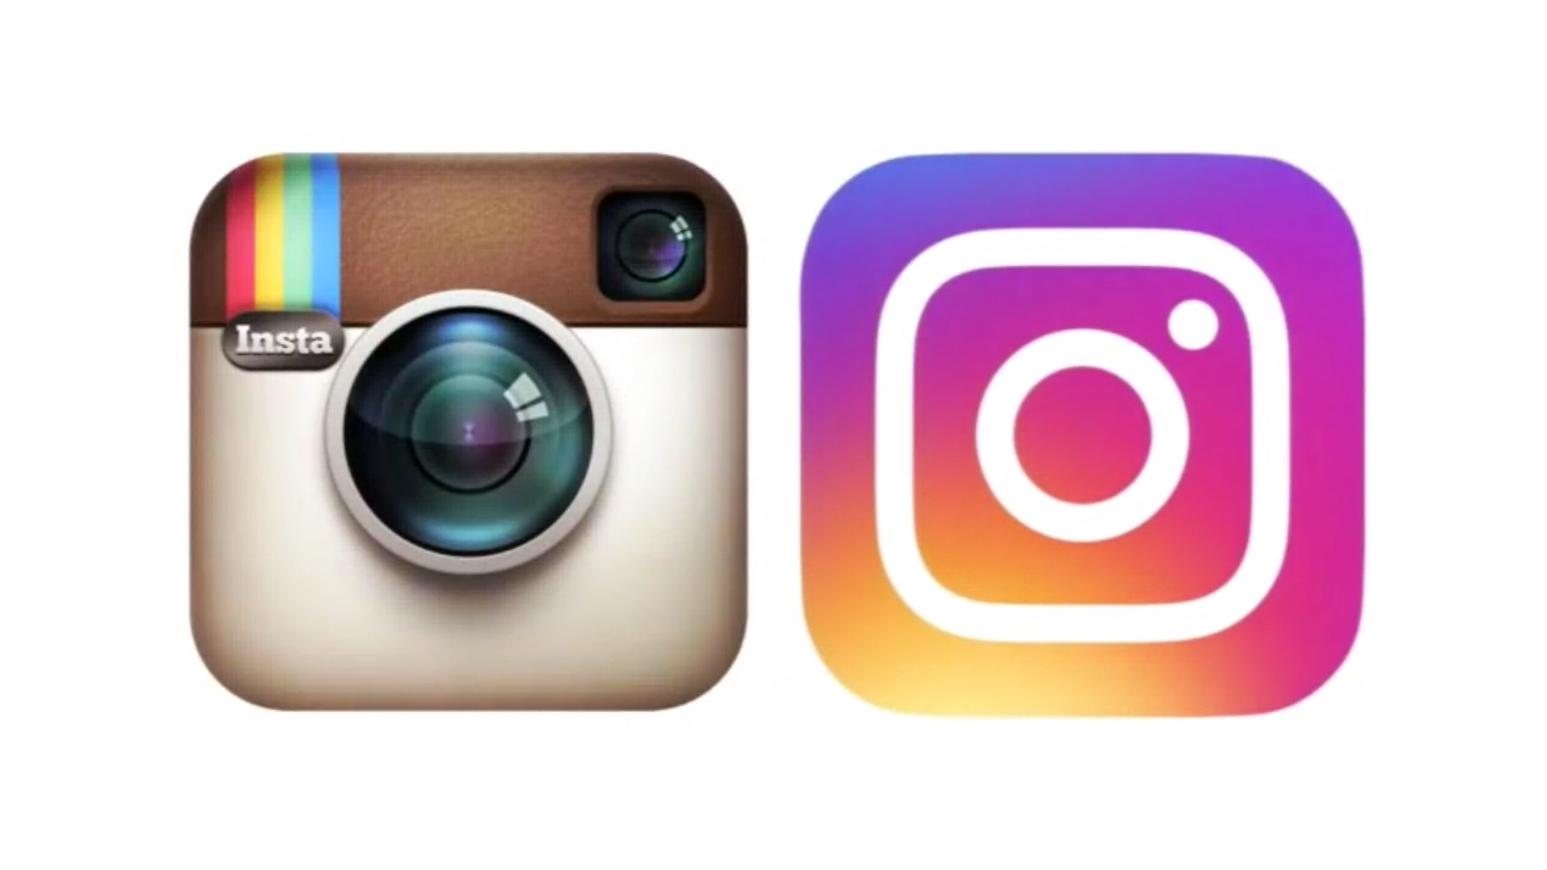 Cara Modern Dapatkan Puluhan Ribu Followers Instagram Dengan